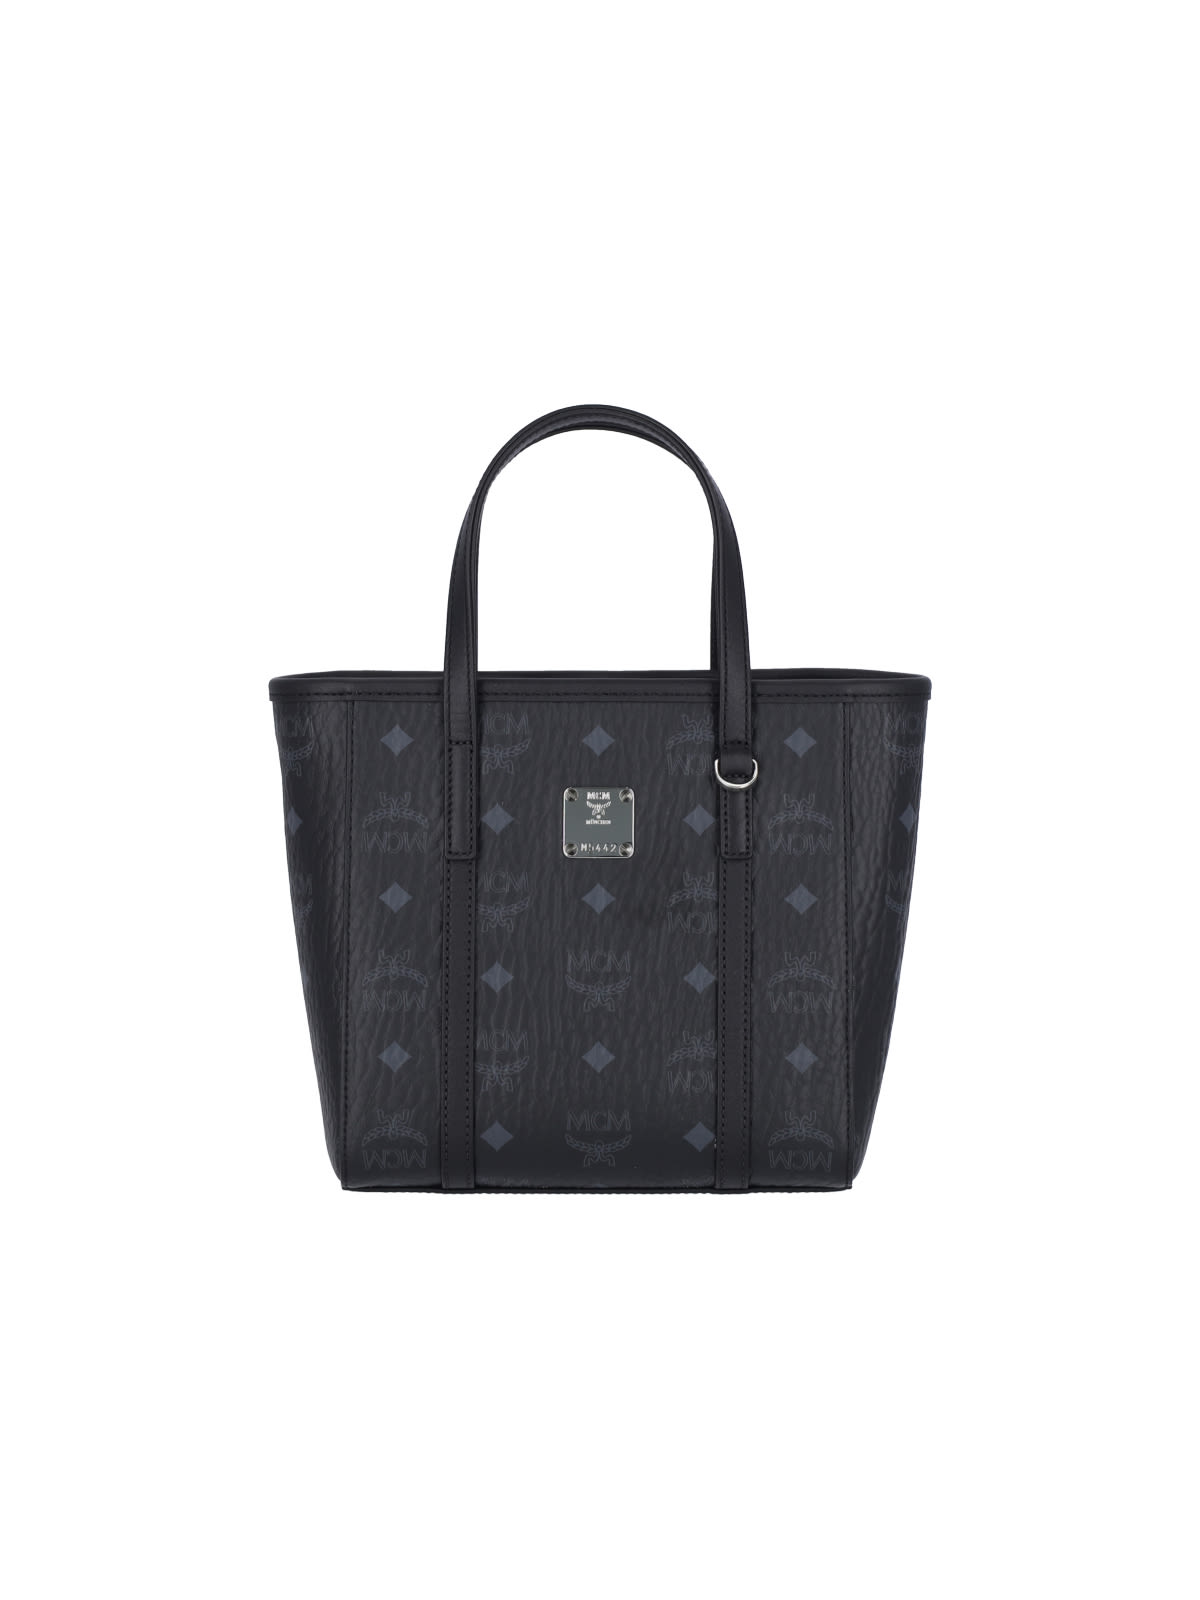 Mcm Toni Top-zip Mini Handbag In Black